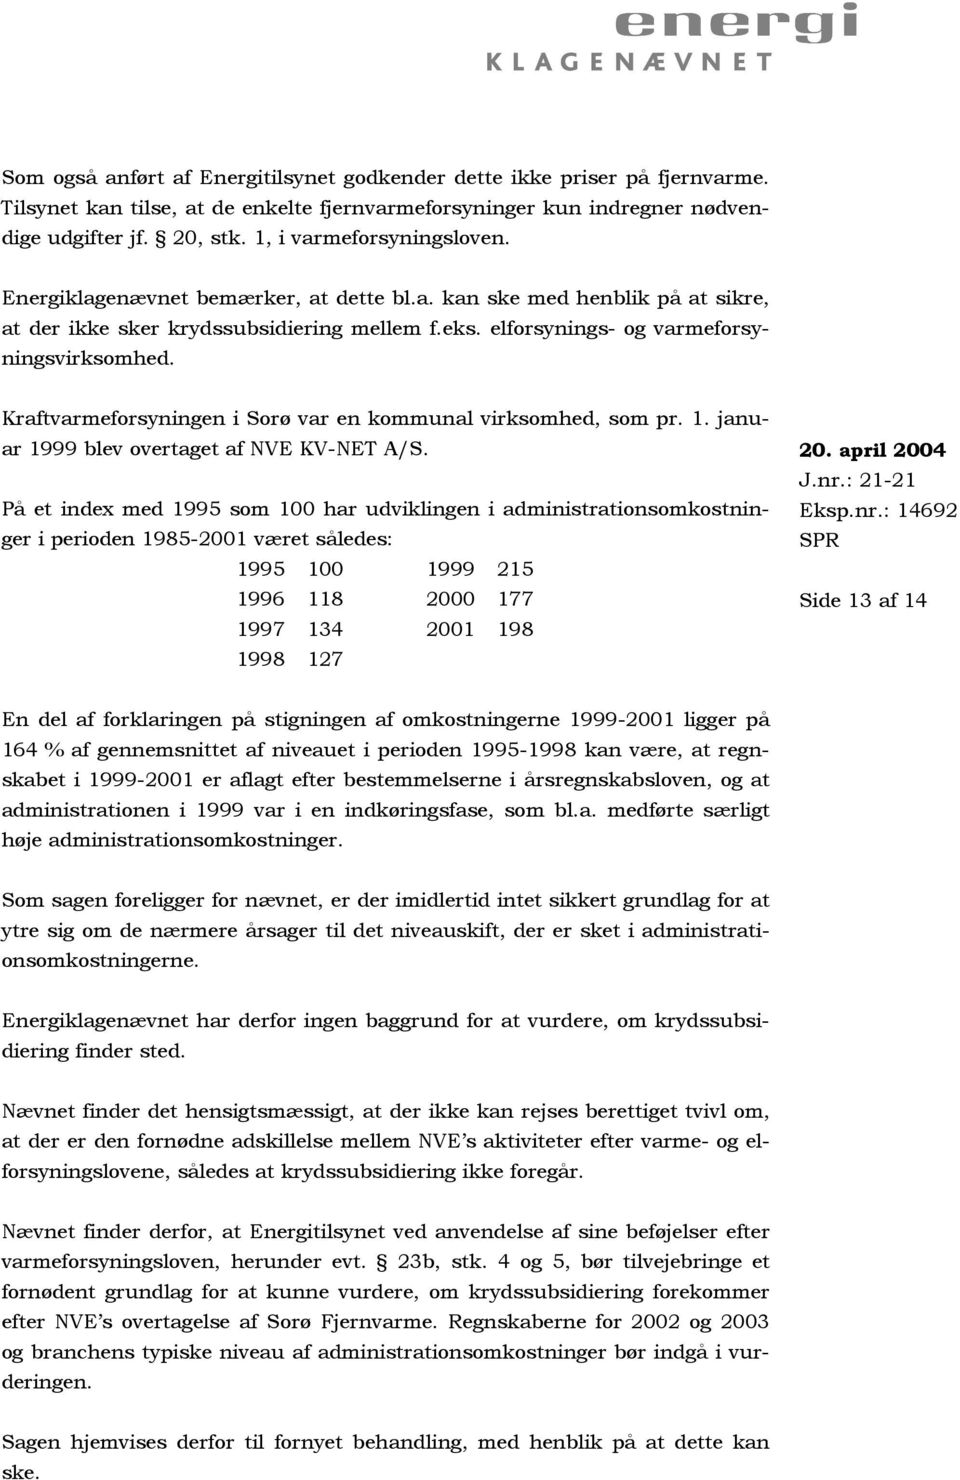 Kraftvarmeforsyningen i Sorø var en kommunal virksomhed, som pr. 1. januar 1999 blev overtaget af NVE KV-NET A/S.